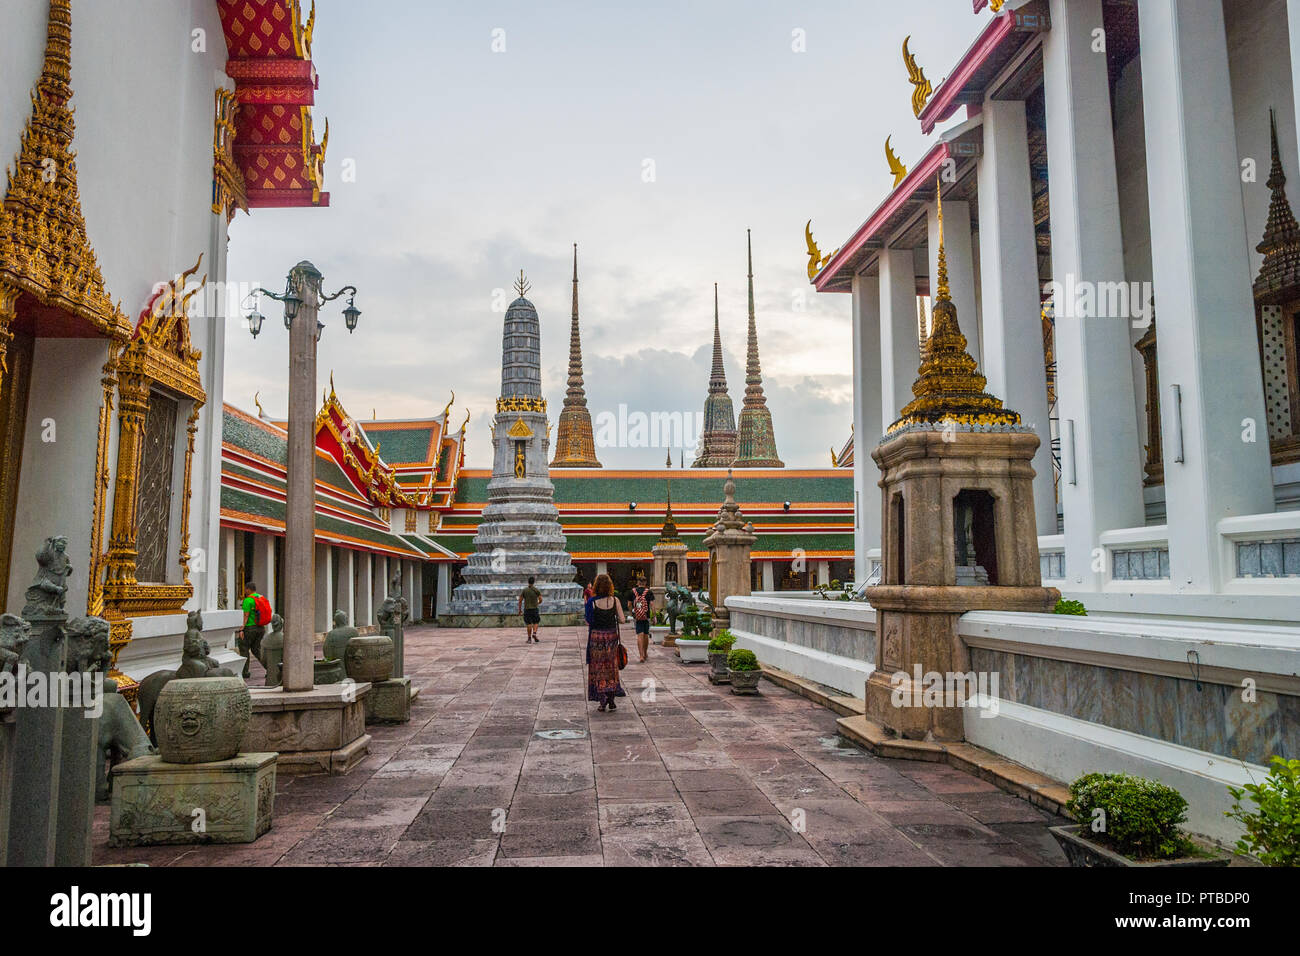 Bangkok, Thailand - Sep 10, 2015: People passing the pagodas at Wat Phra temple in Bangkok Stock Photo